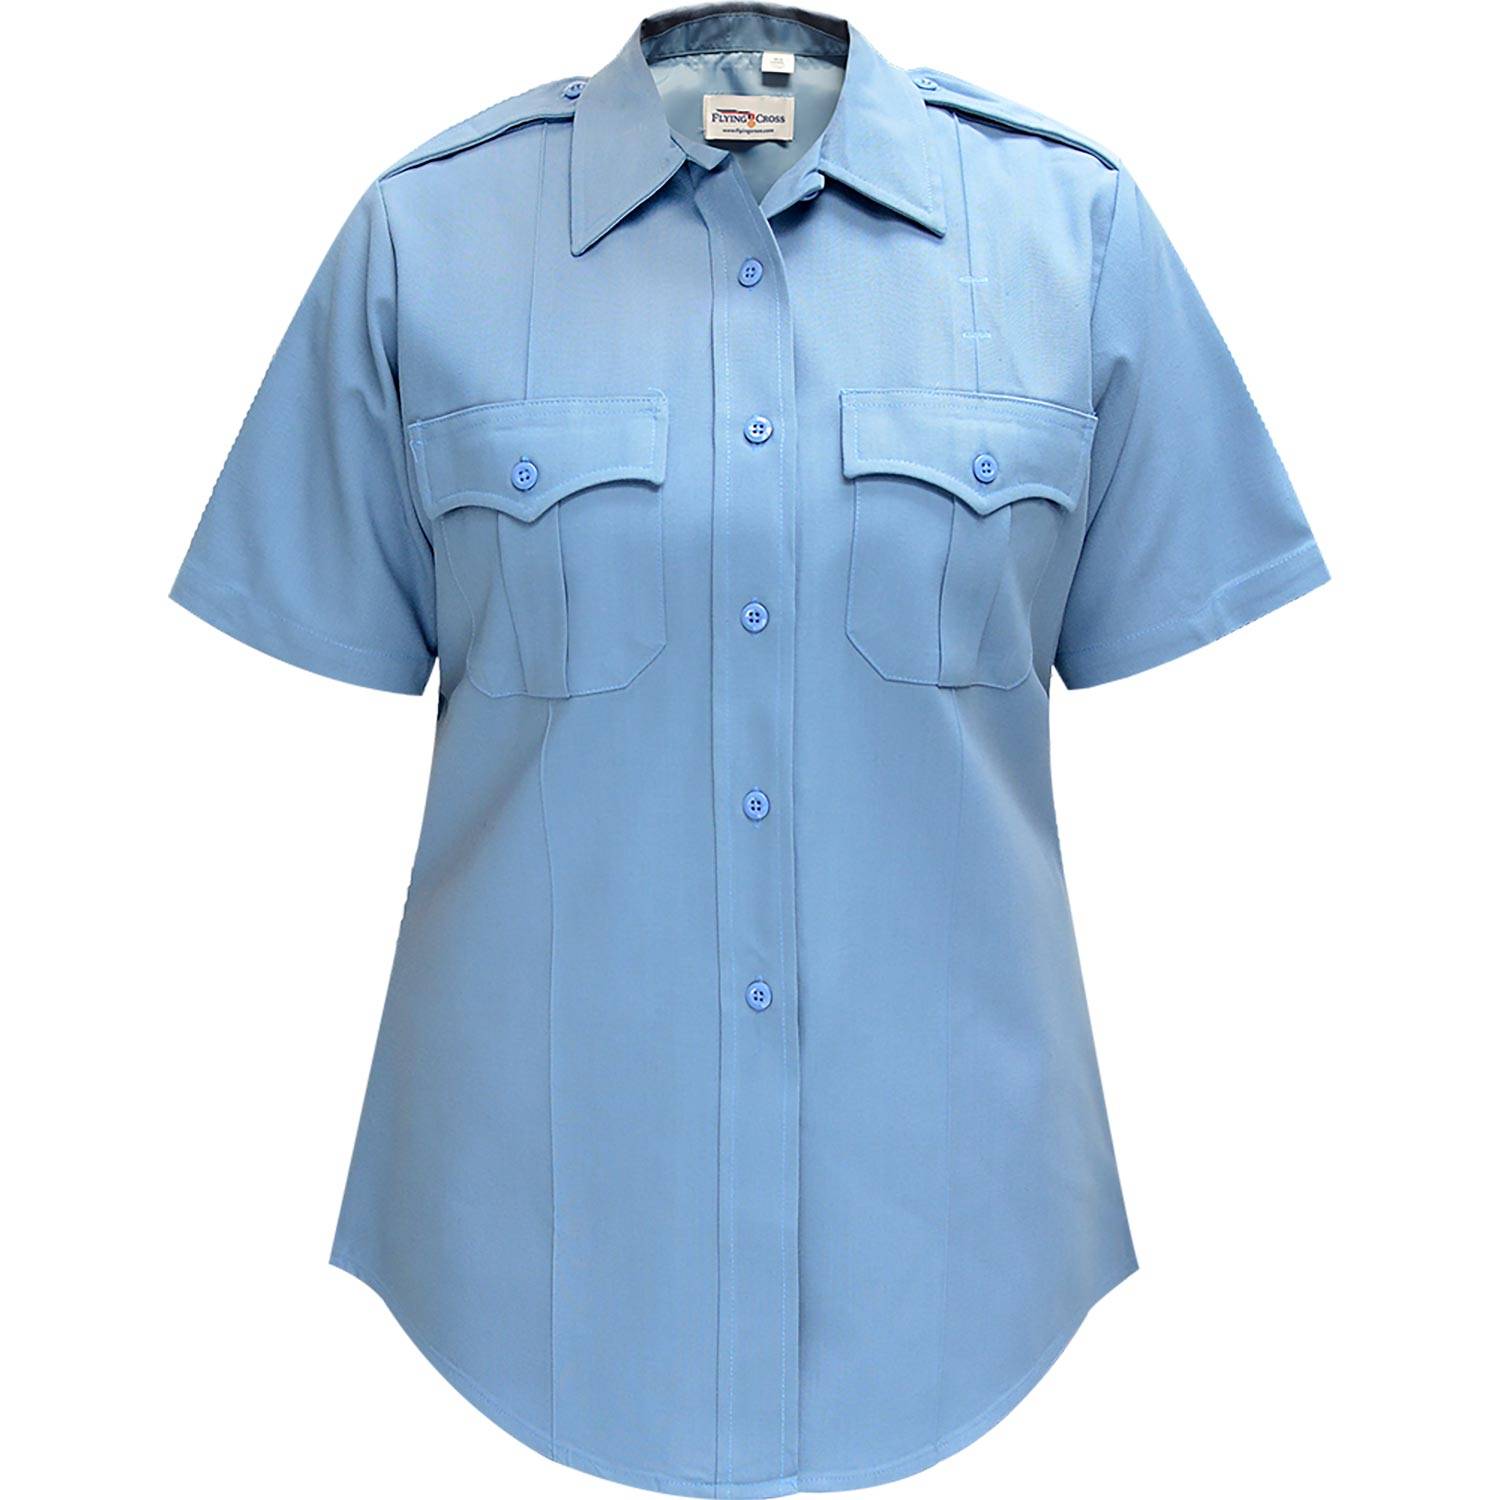 Flying Cross Women's Command Polyester Short Sleeve Shirt